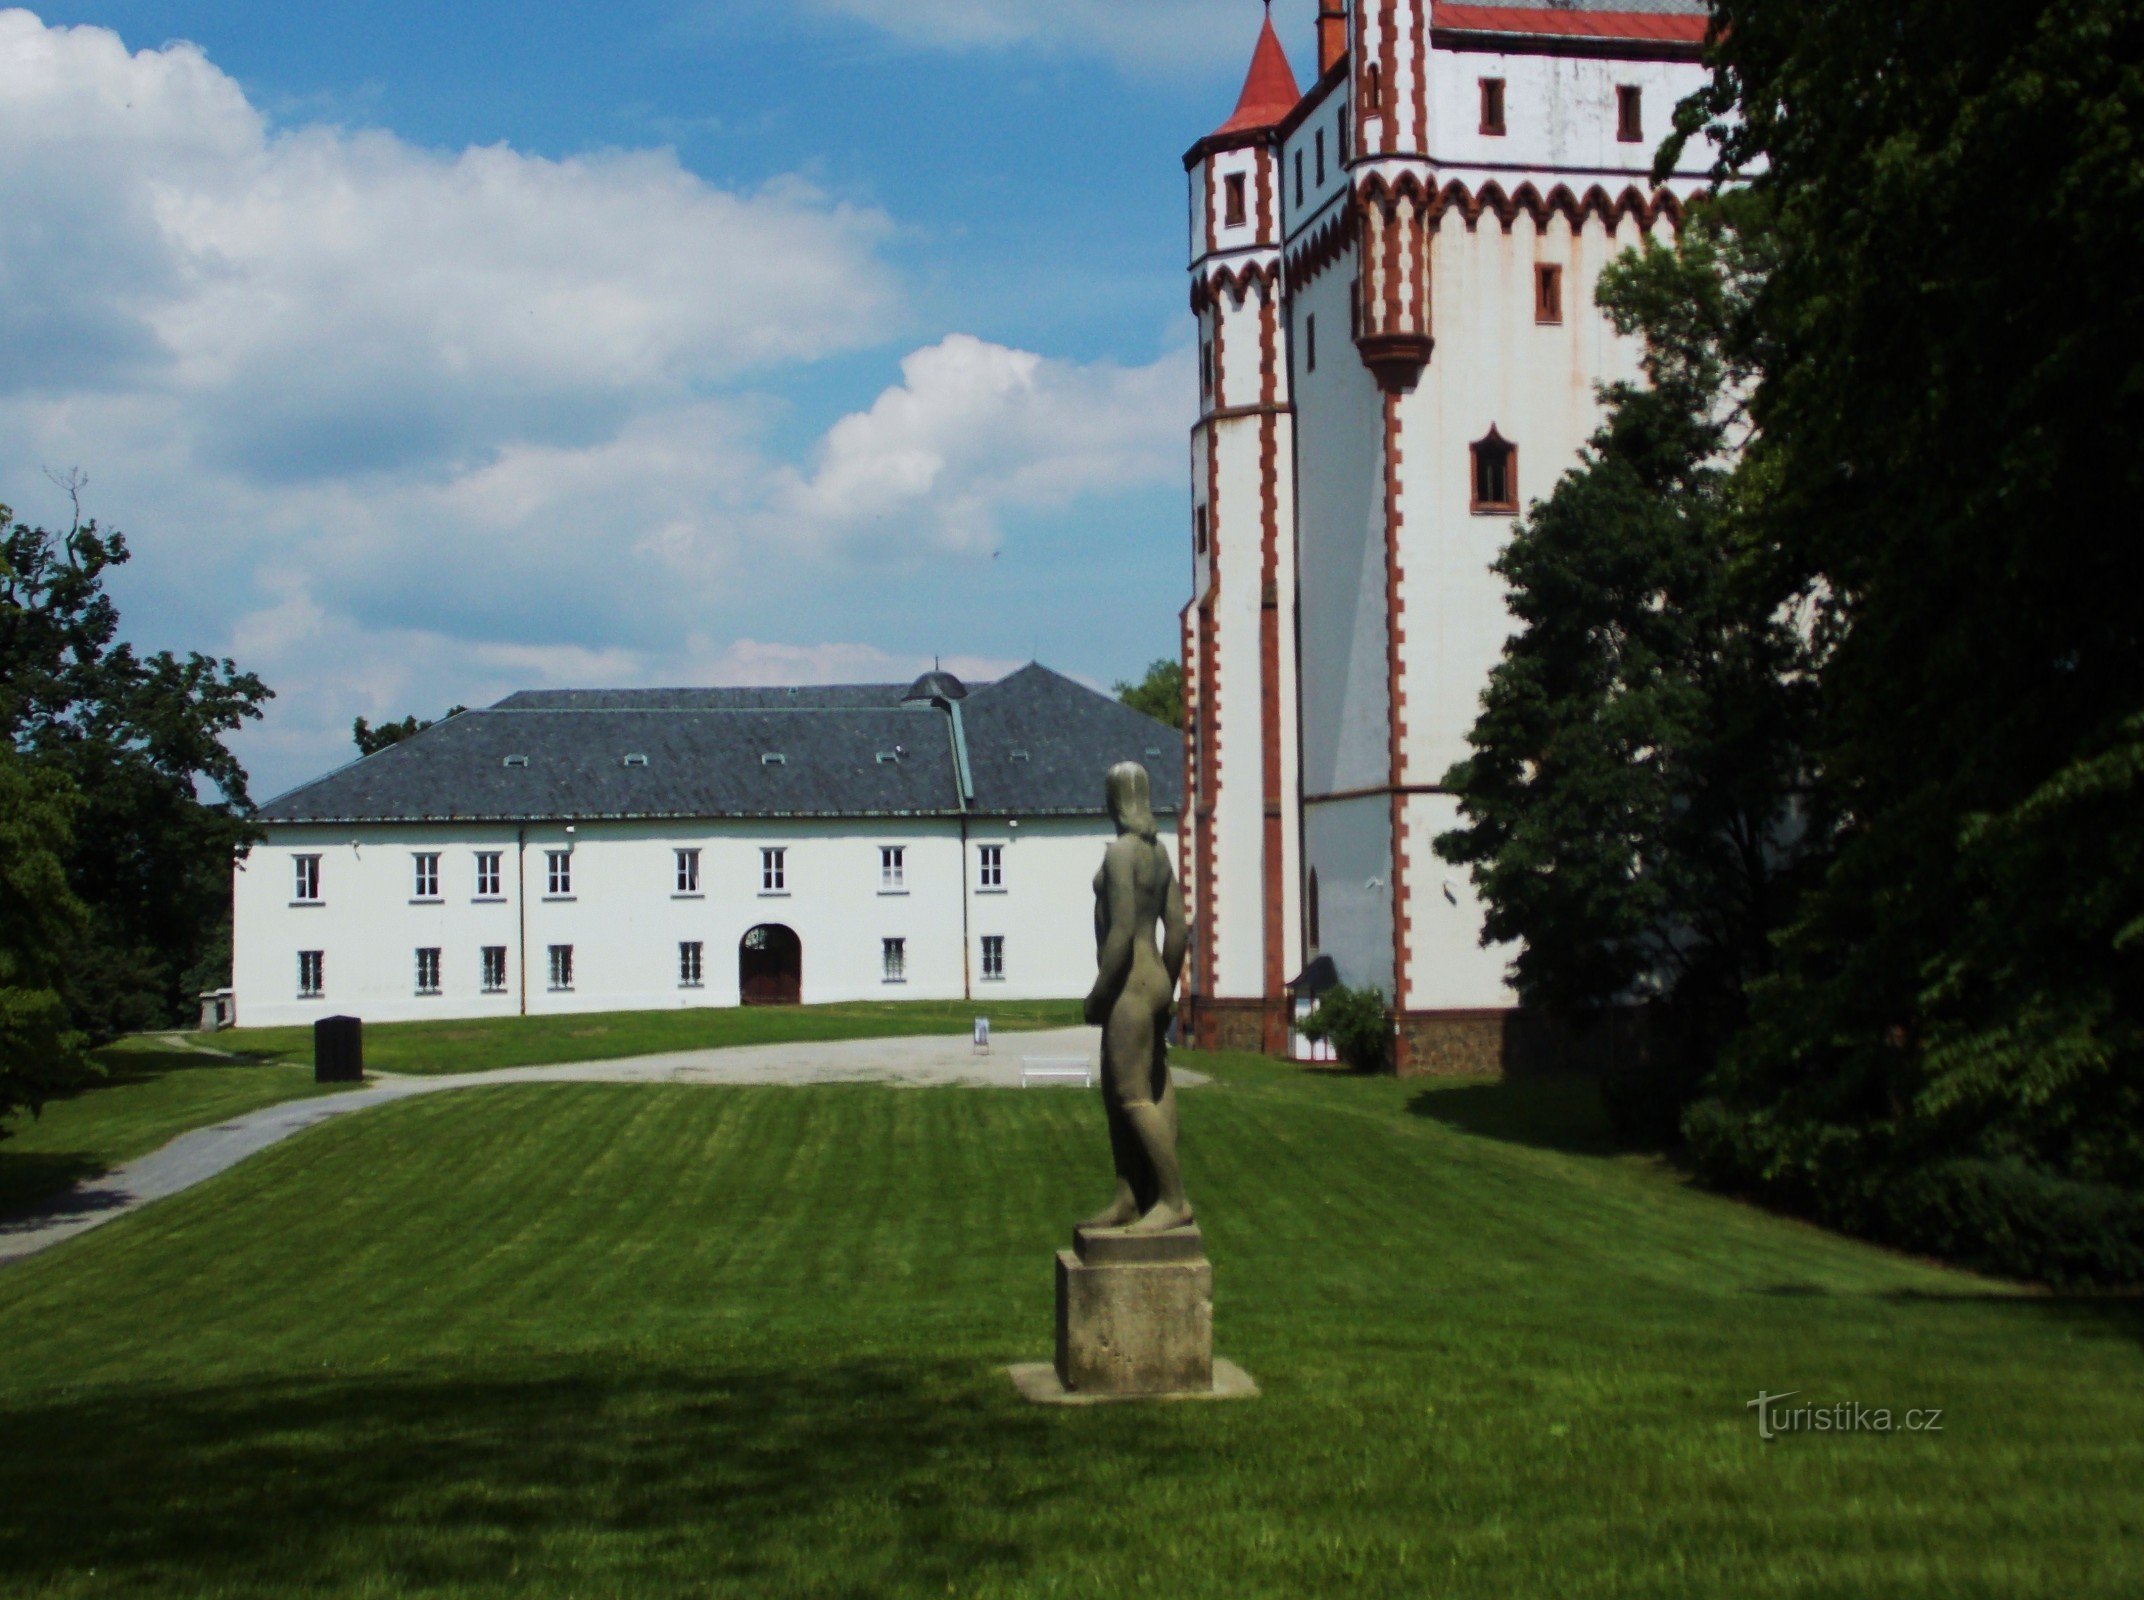 Ο πύργος του λευκού νερού στο πάρκο του κάστρου στο Hradec nad Moravicí